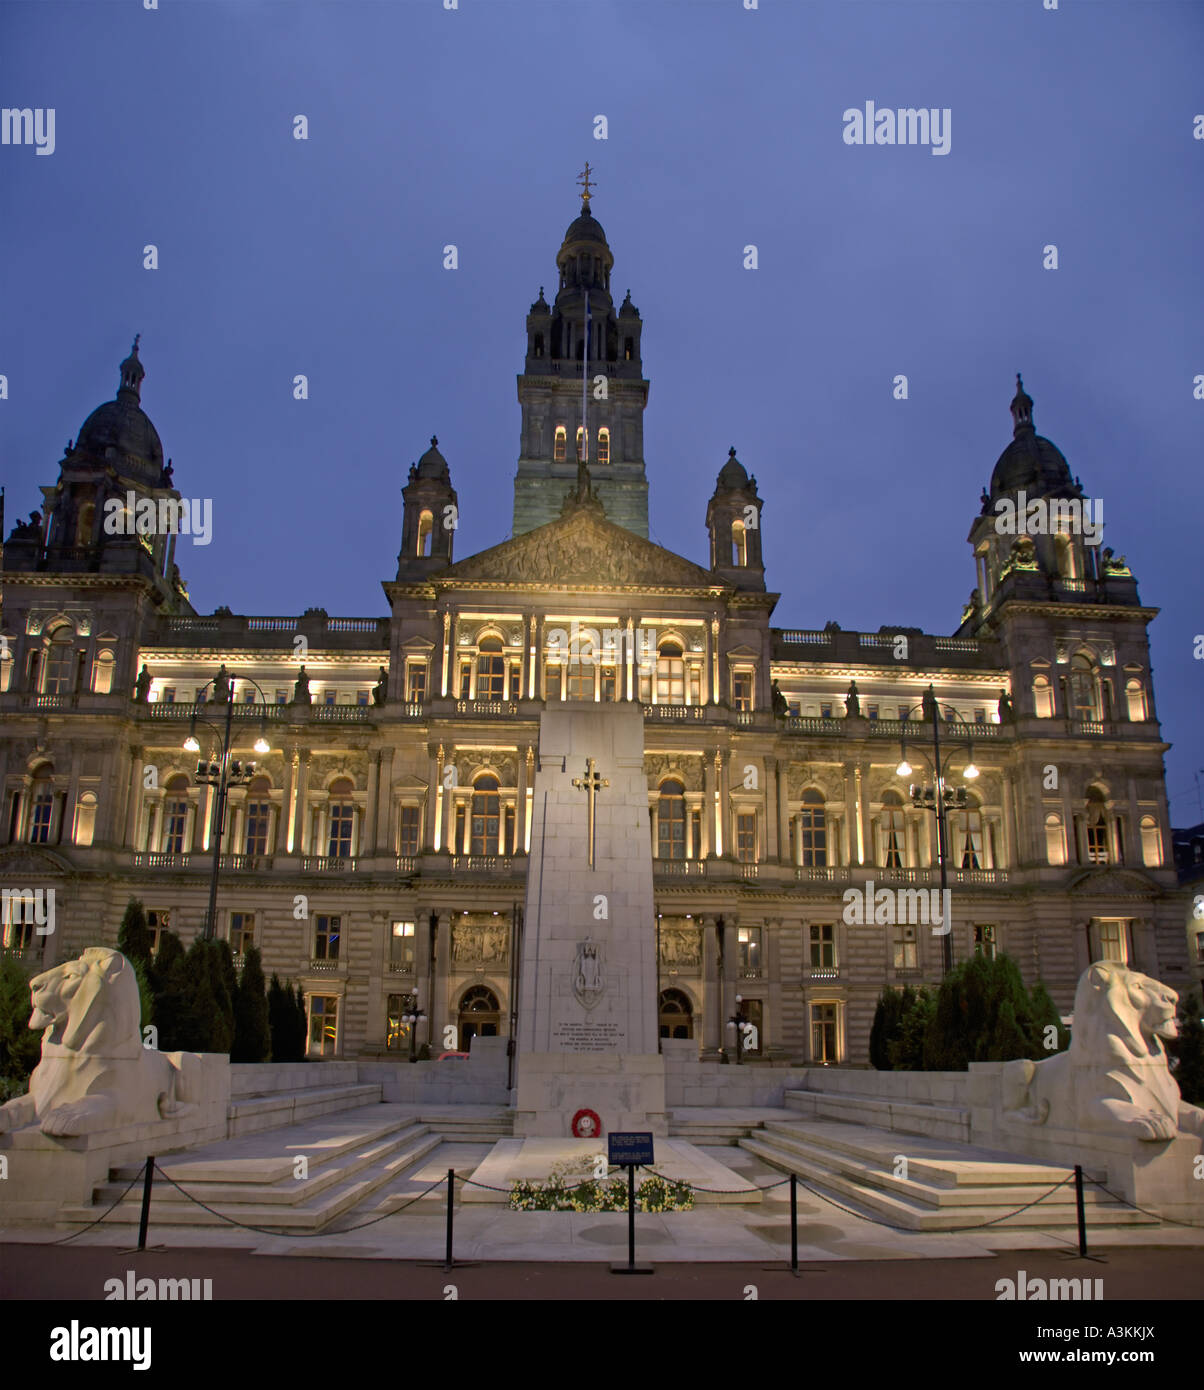 STITCH Glasgow City Chambers et monument aux morts la nuit George Square Glasgow Ecosse Noël Banque D'Images